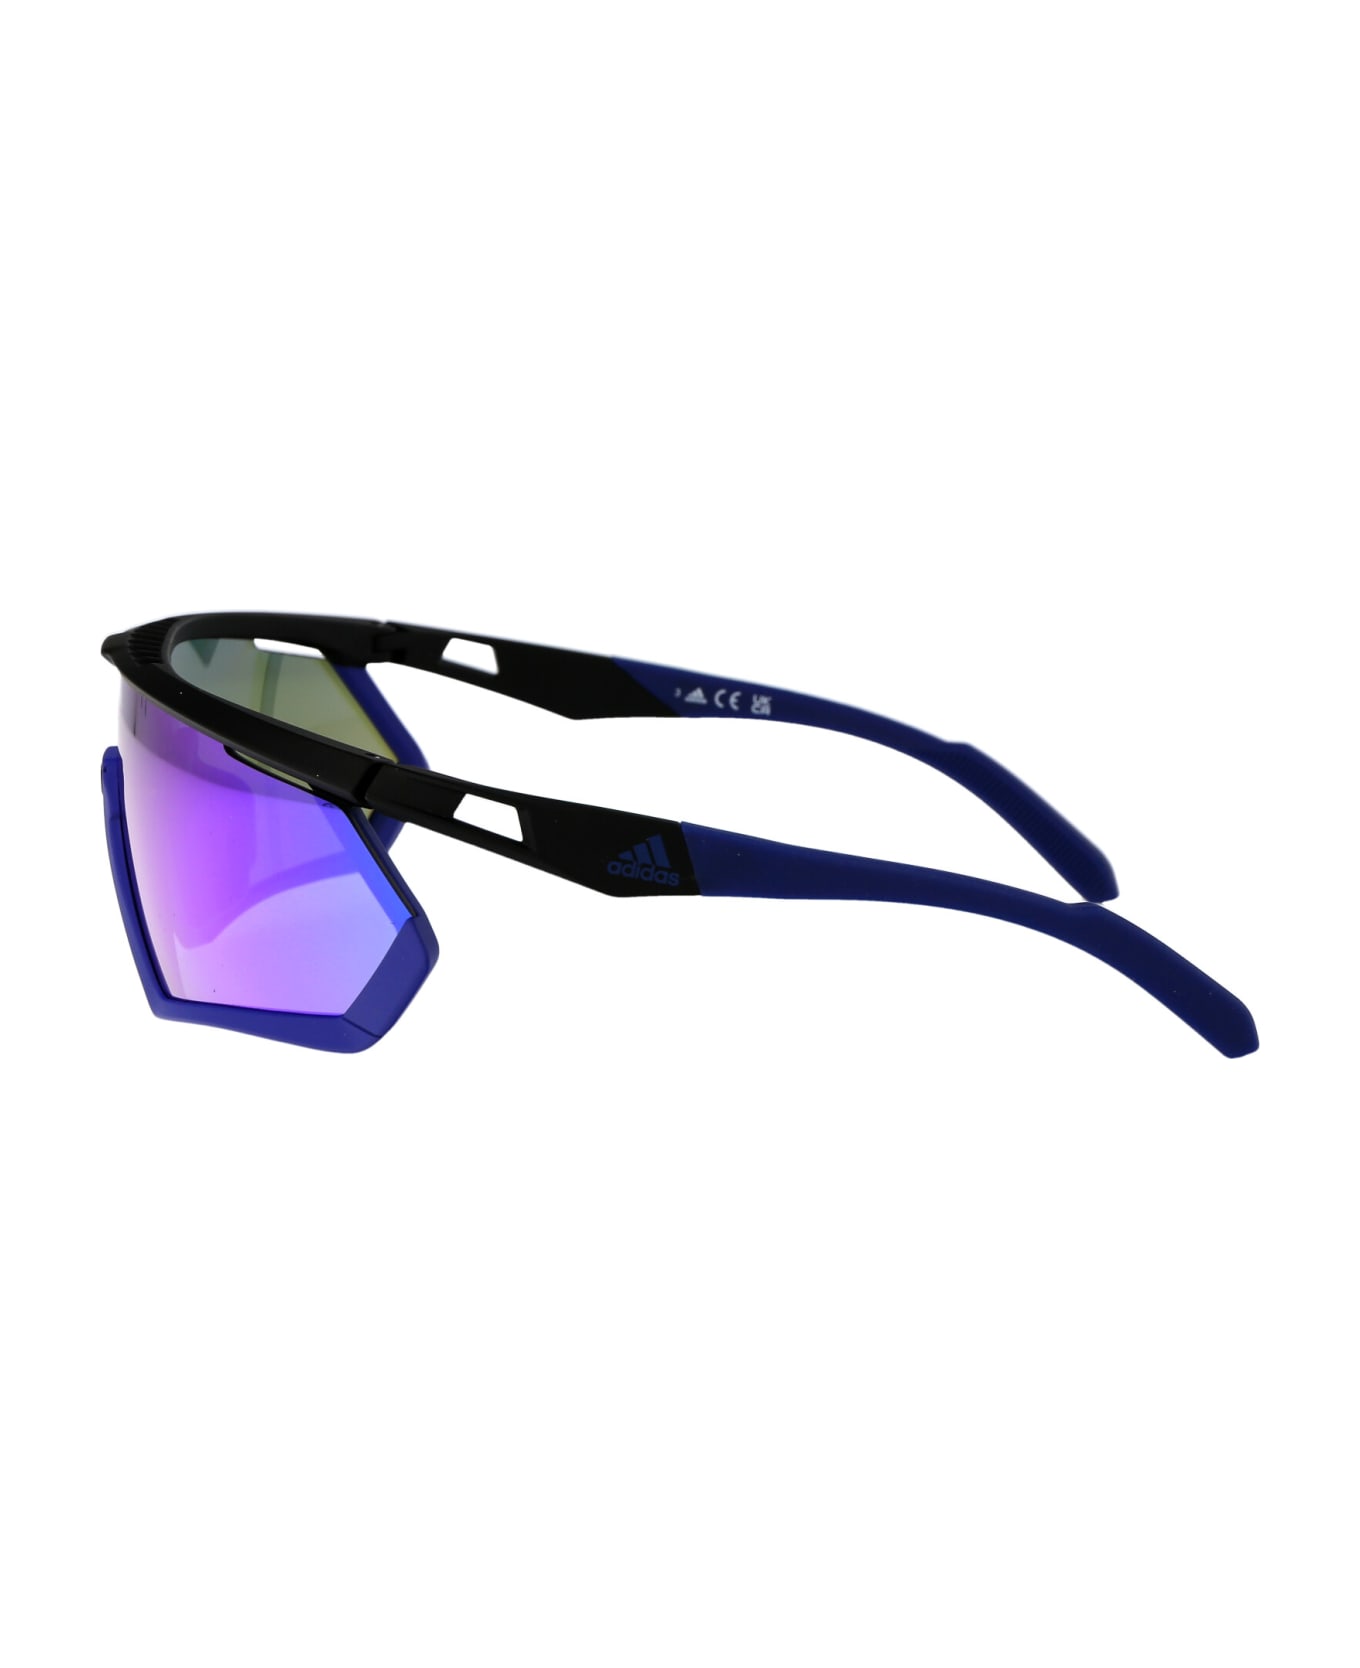 Adidas Sp0054 Sunglasses - 02Z Nero Opaco/Viola Grad E/O Specchiato